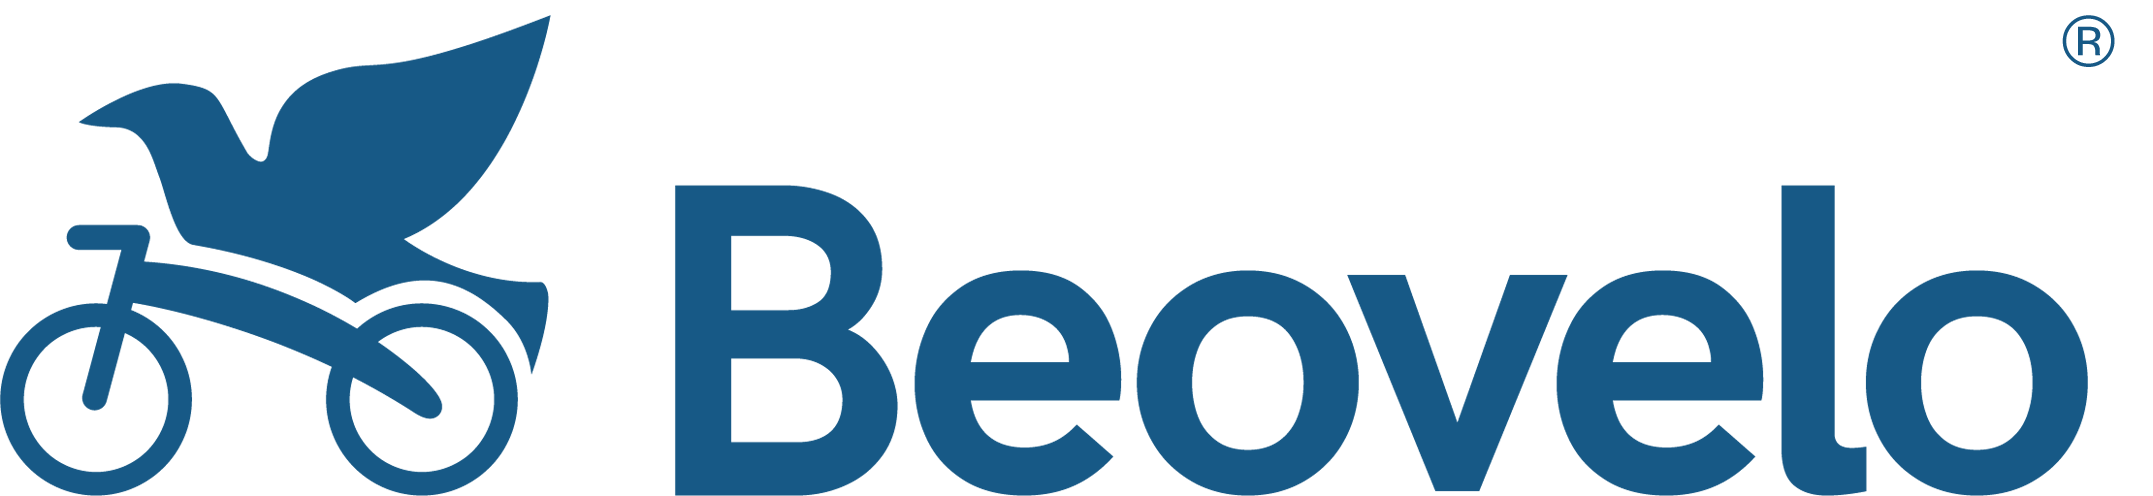 logo of the brand Beovelo